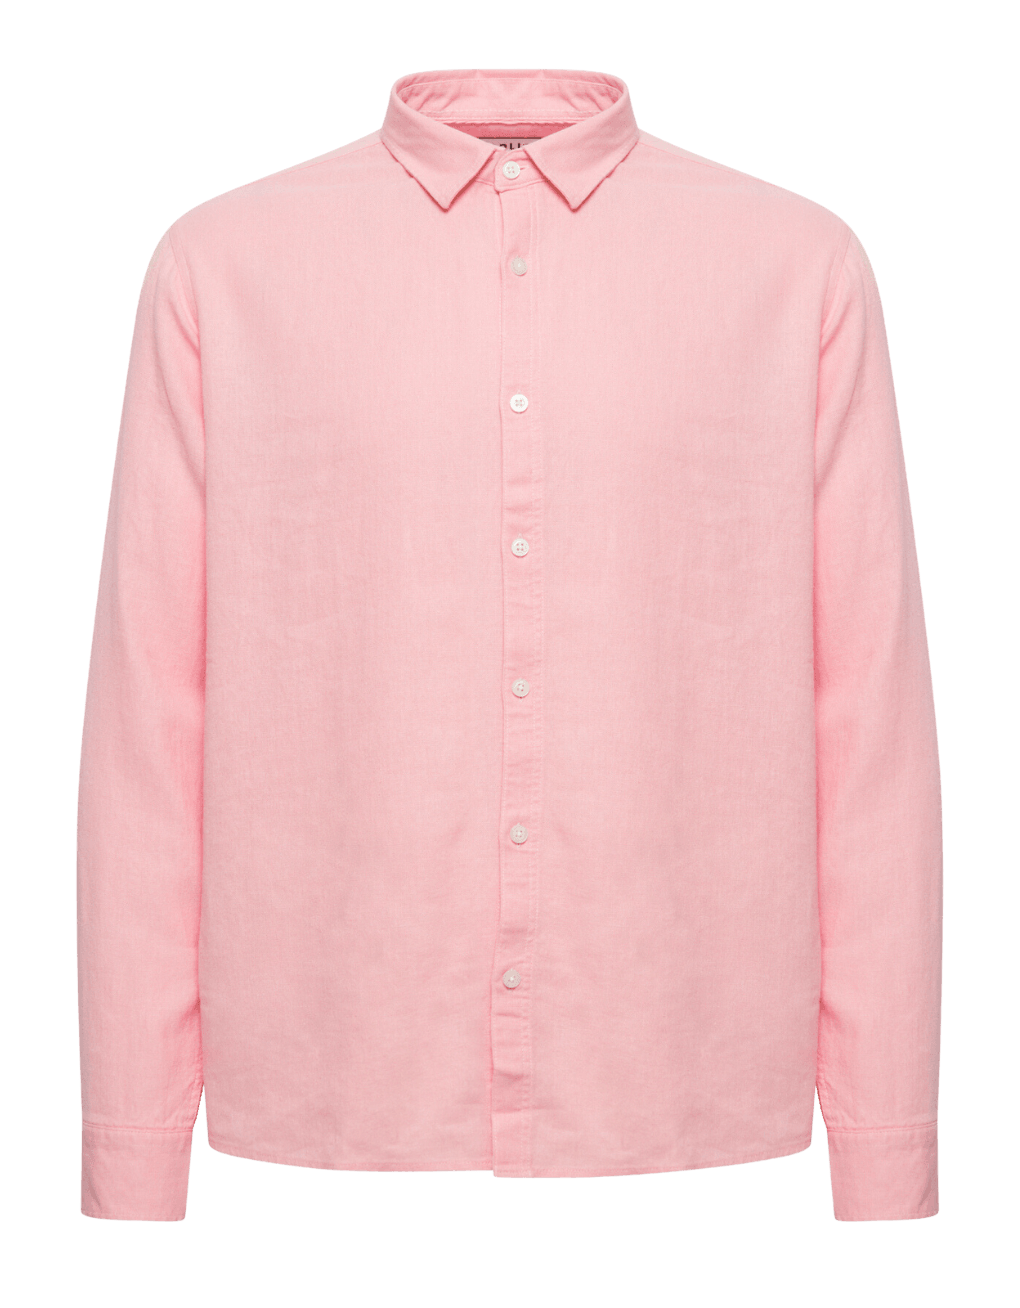 Camisa !Solid Enea Allan Powder Pink - ECRU